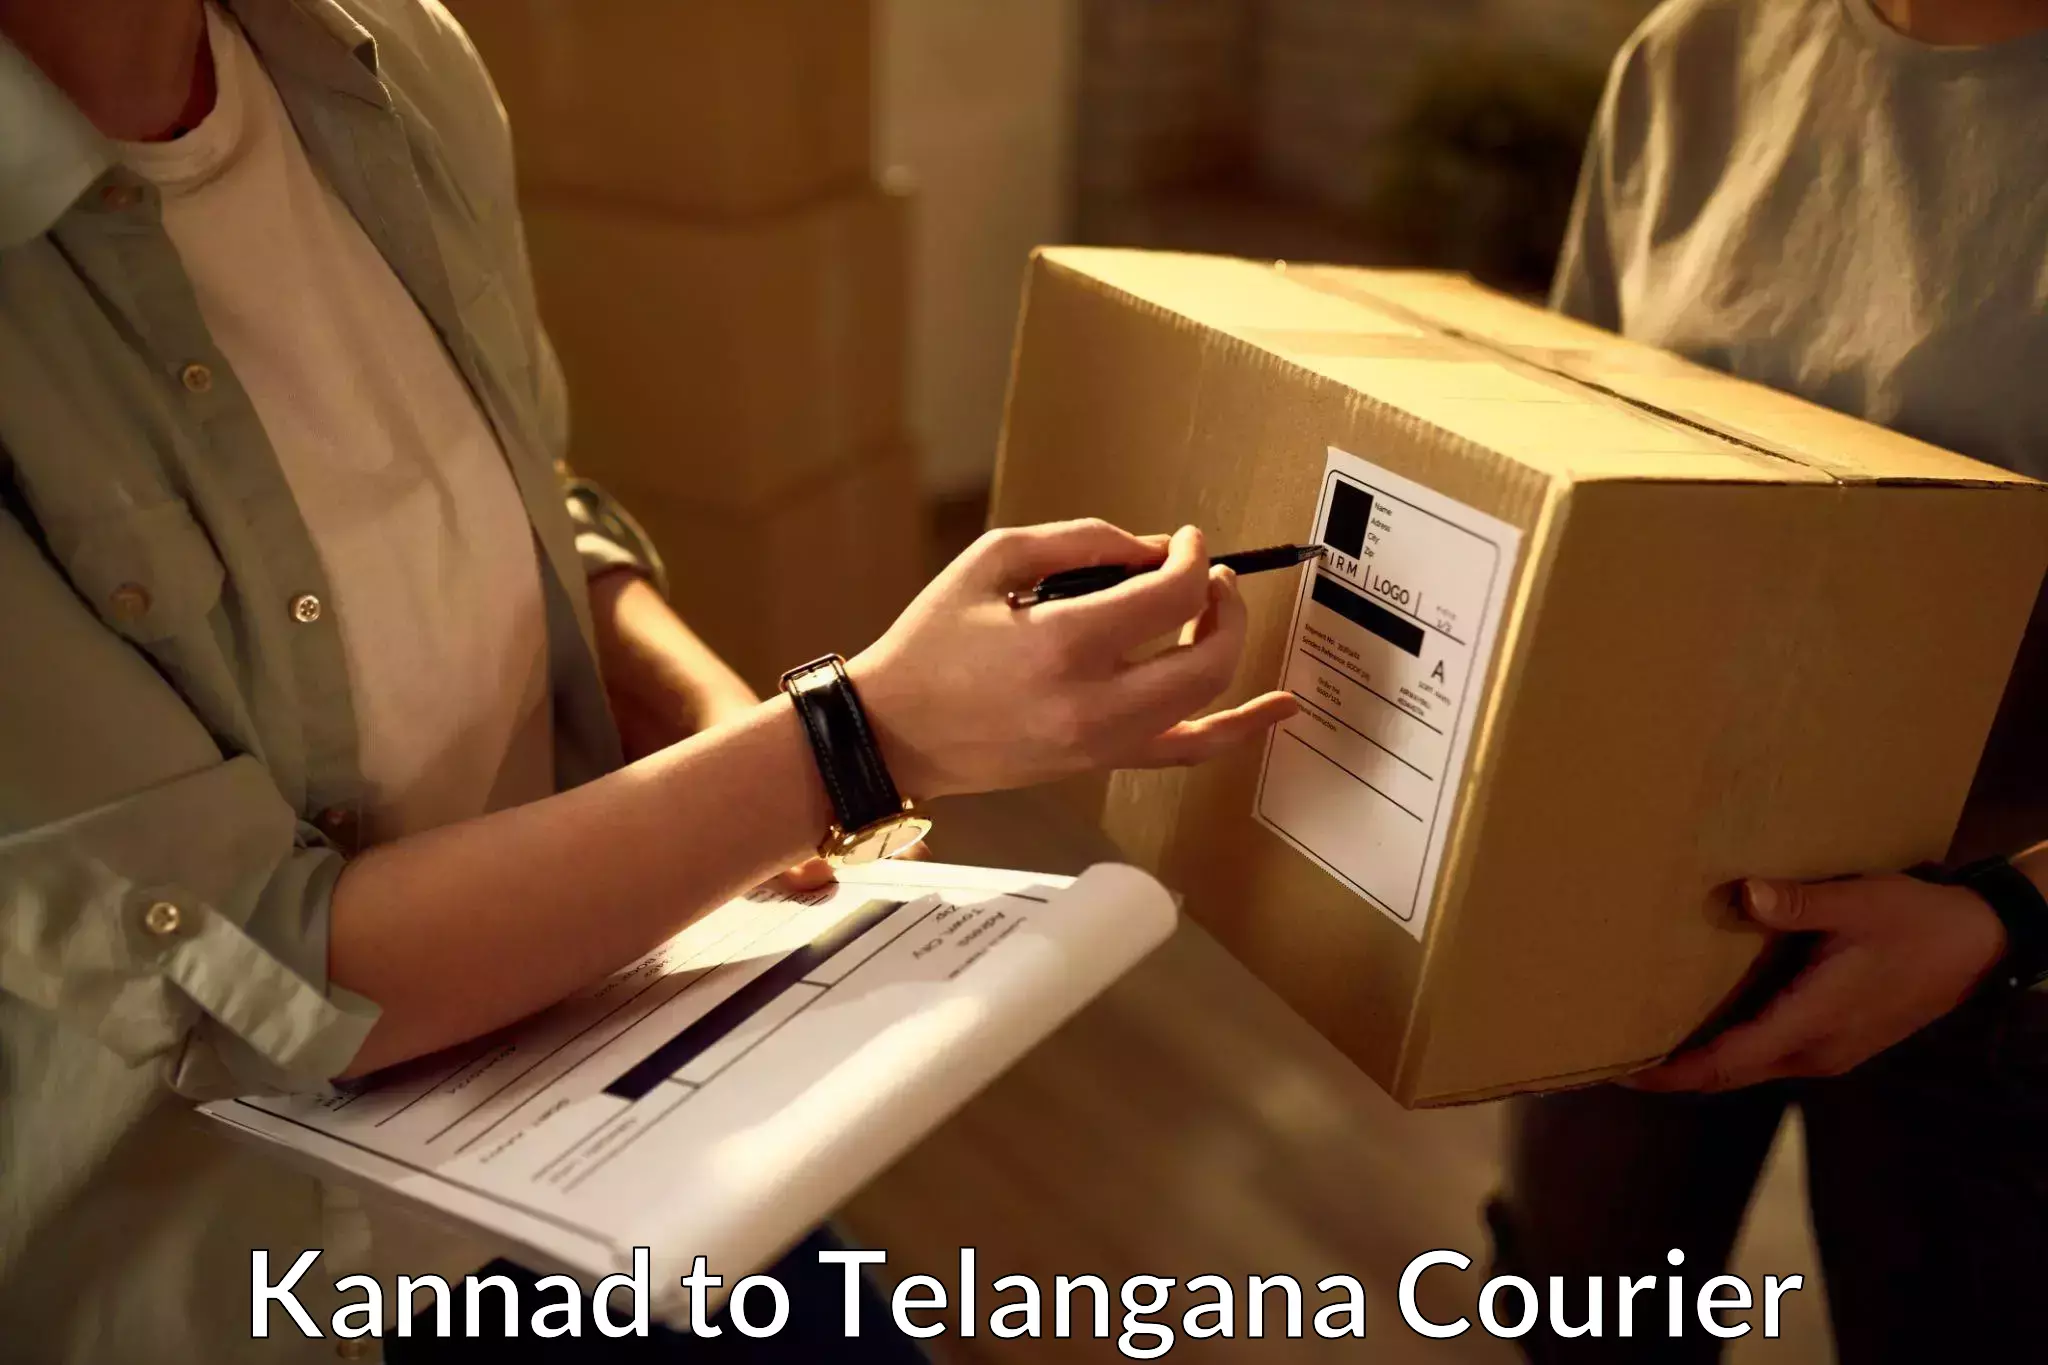 Regular parcel service Kannad to Kusumanchi